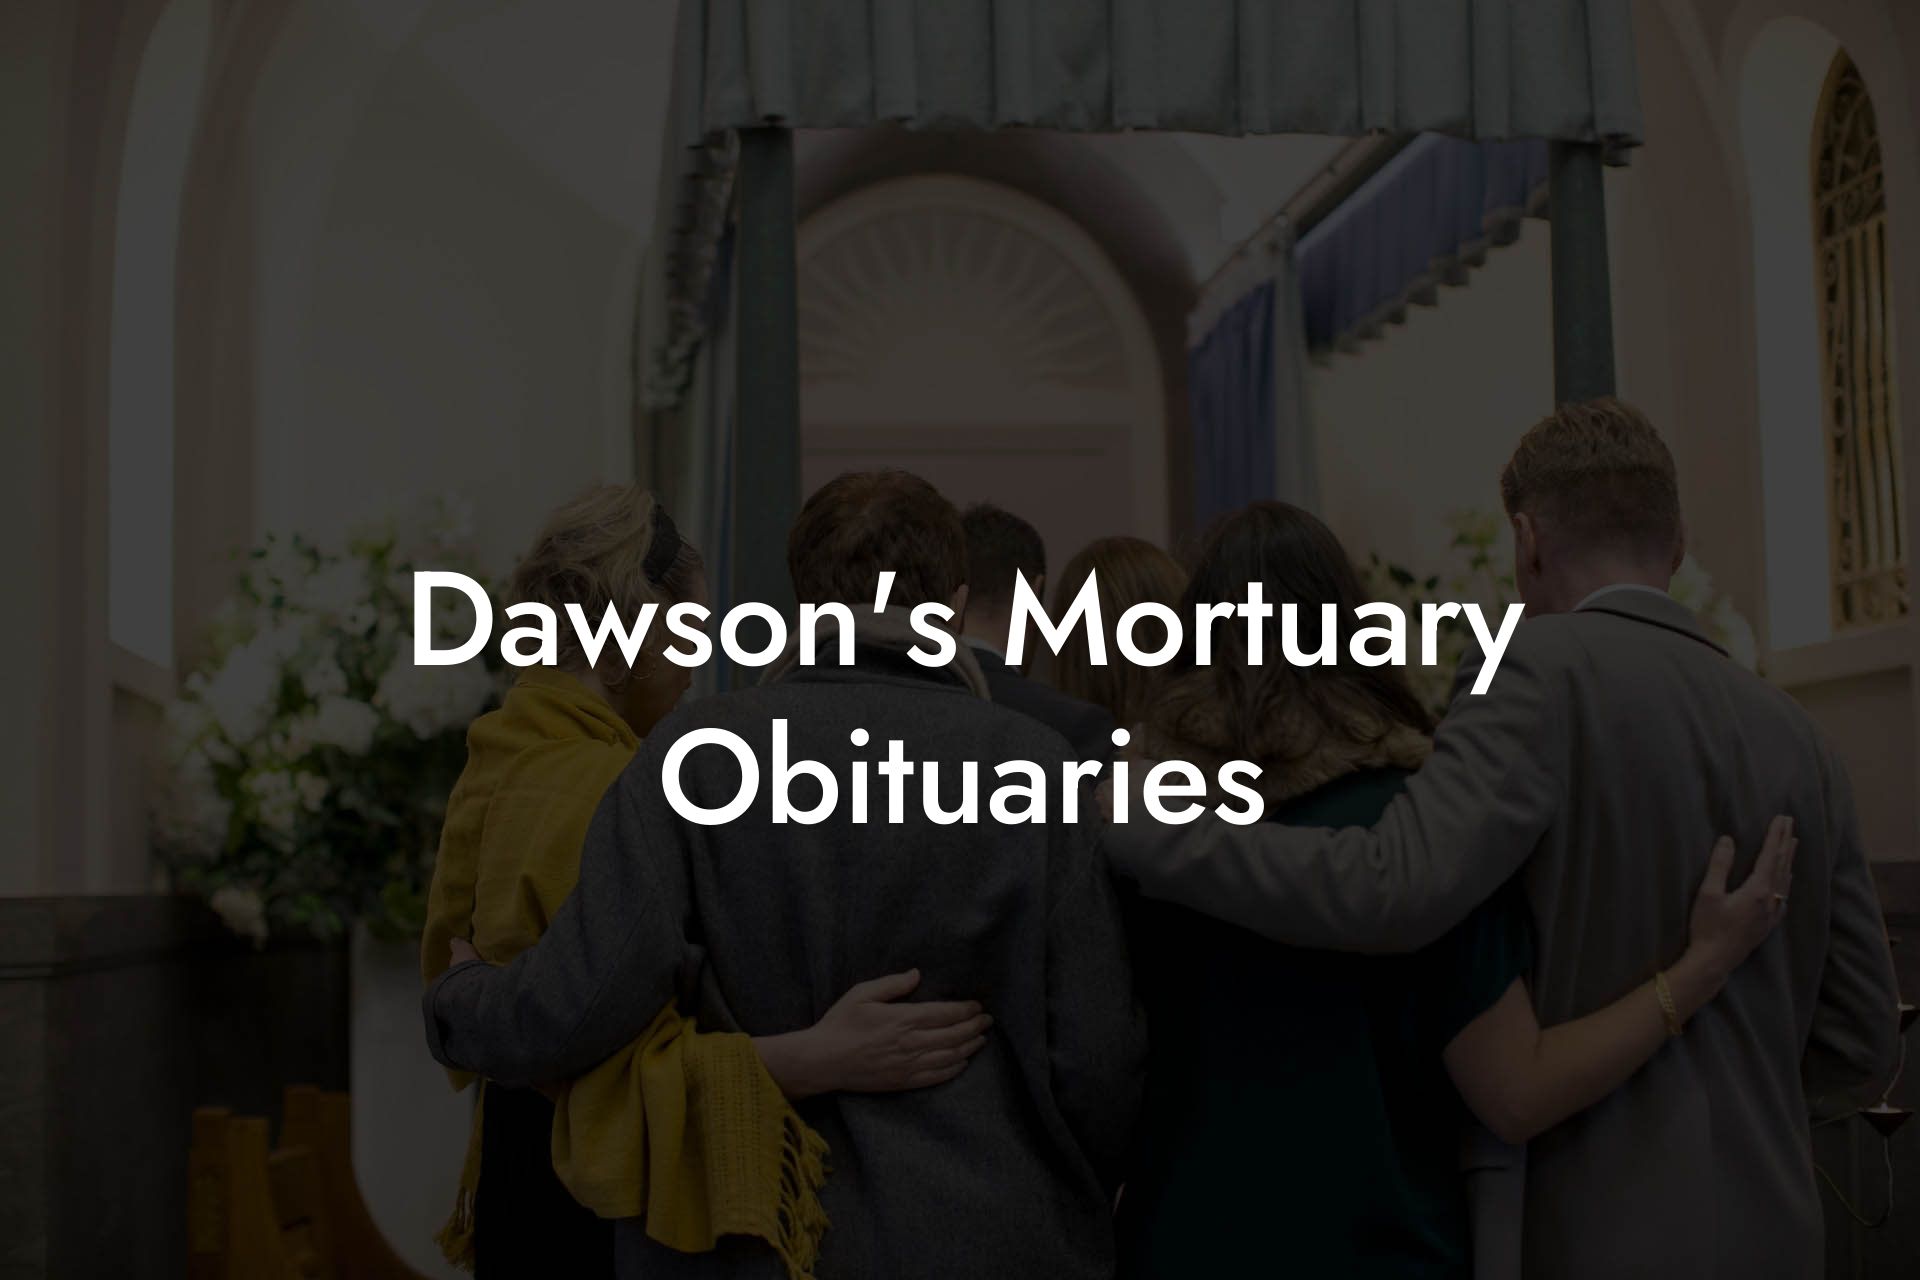 Dawson's Mortuary Obituaries